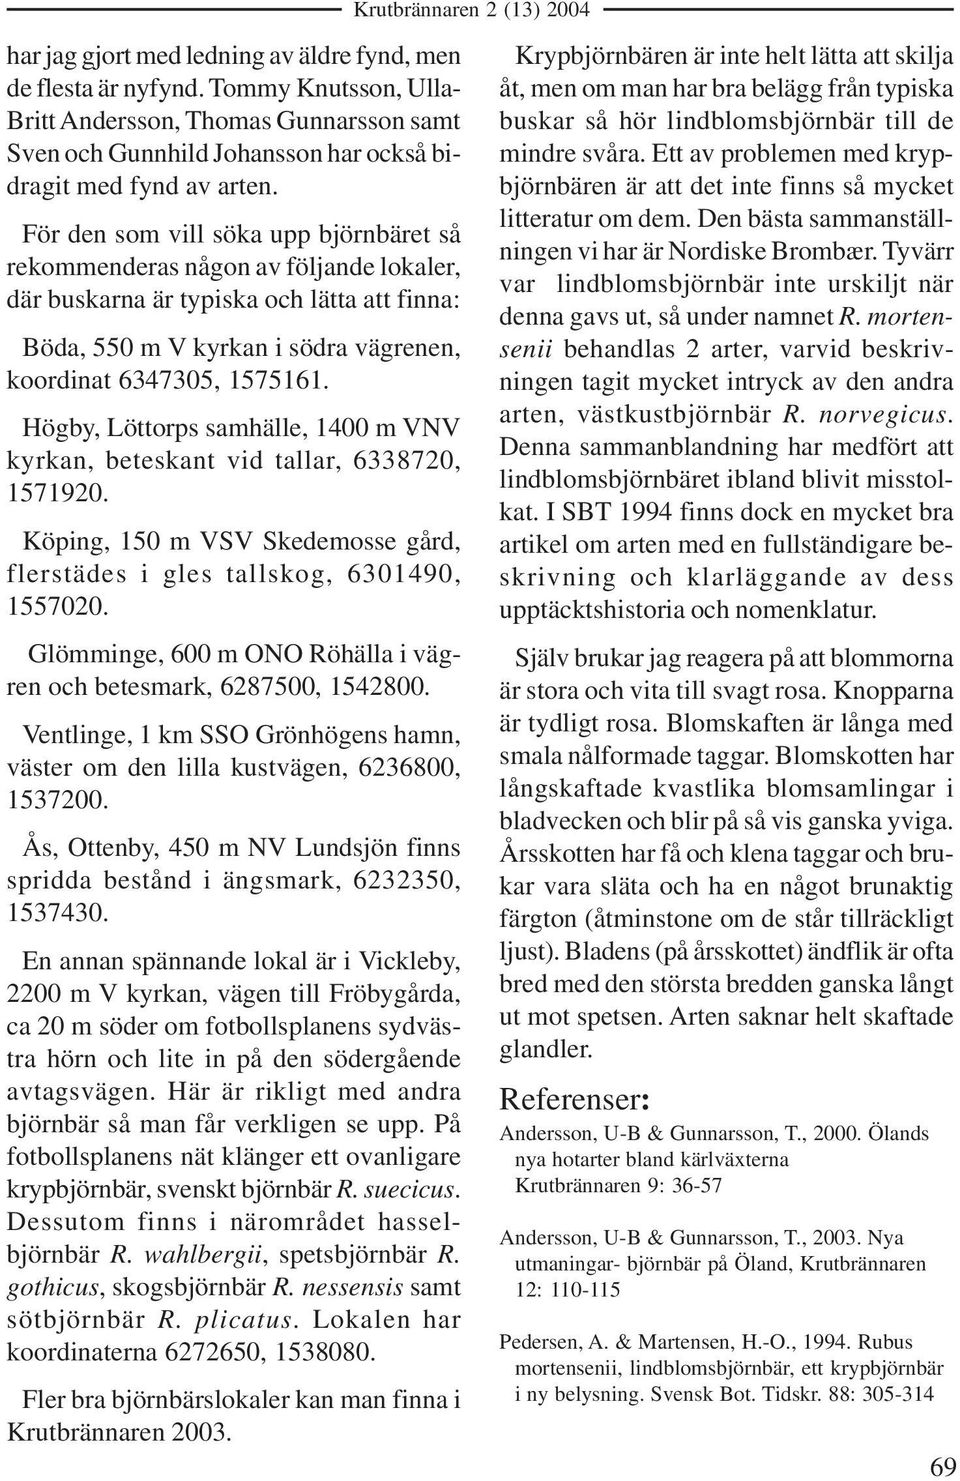 Högby, Löttorps samhälle, 1400 m VNV kyrkan, beteskant vid tallar, 6338720, 1571920. Köping, 150 m VSV Skedemosse gård, flerstädes i gles tallskog, 6301490, 1557020.